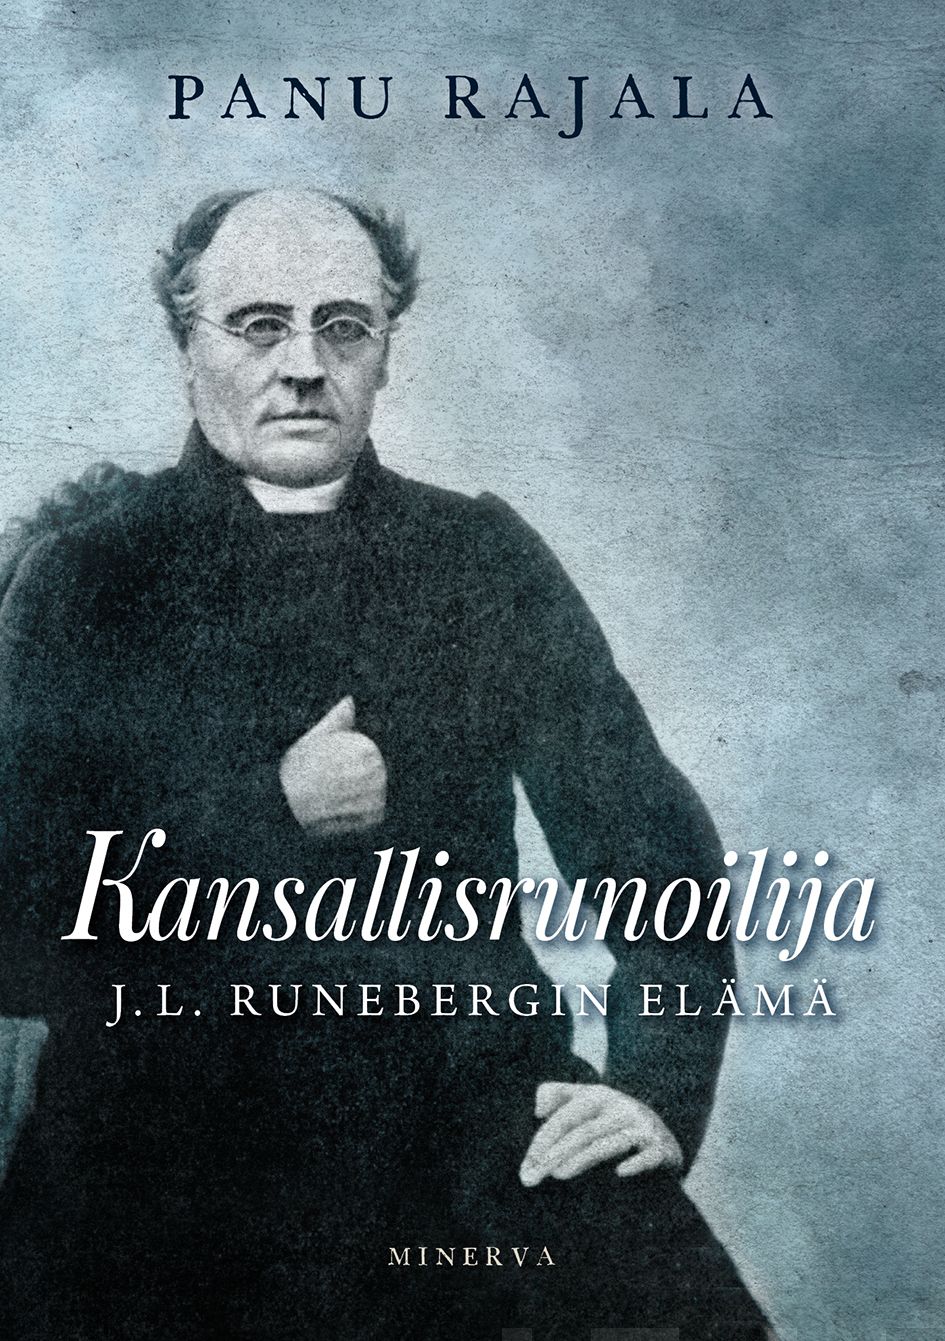 Rajala, Panu - Kansallisrunoilija: J. L. Runebergin elämä, e-bok